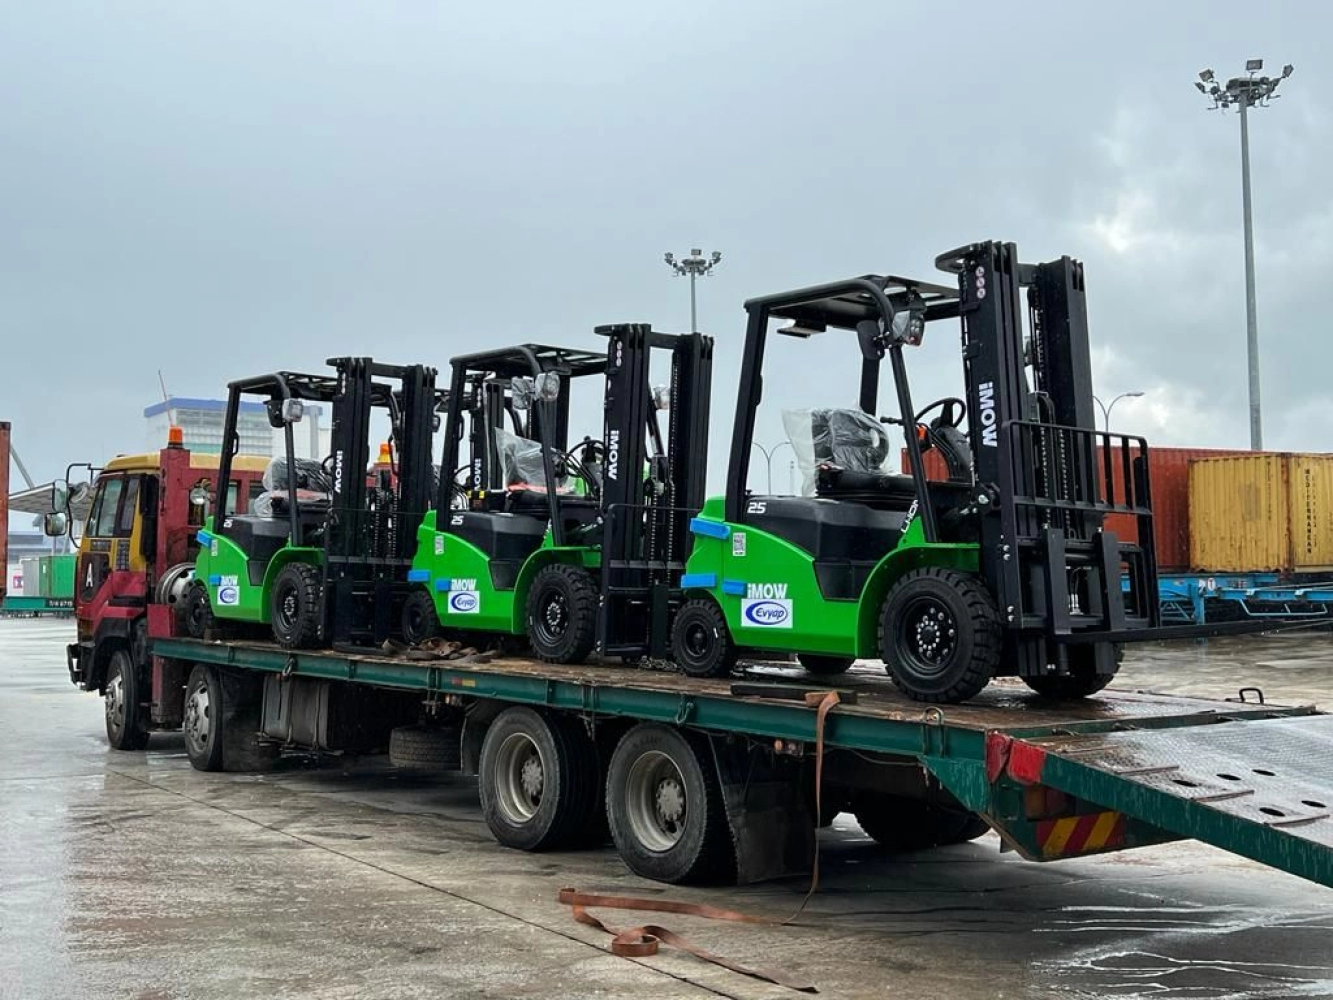 ICE251, iMOW 2.5 Ton forklift delivery to Enyap Sabun